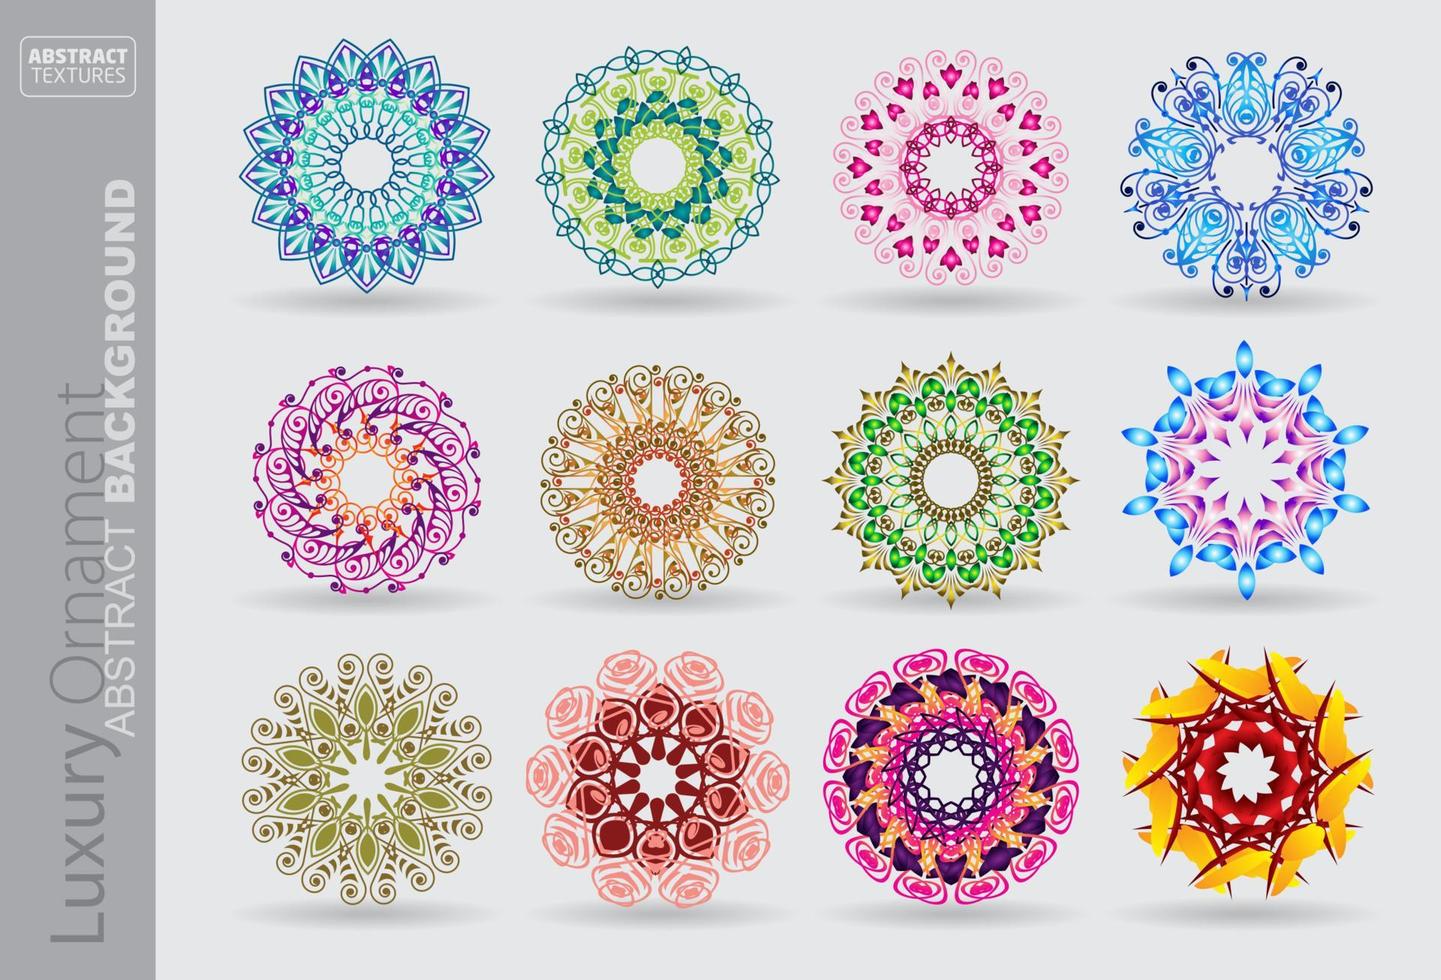 einstellen von Mandalas dekorativ runden Ornamente. weben Design Elemente. ungewöhnlich Blume Form. orientalisch vektor